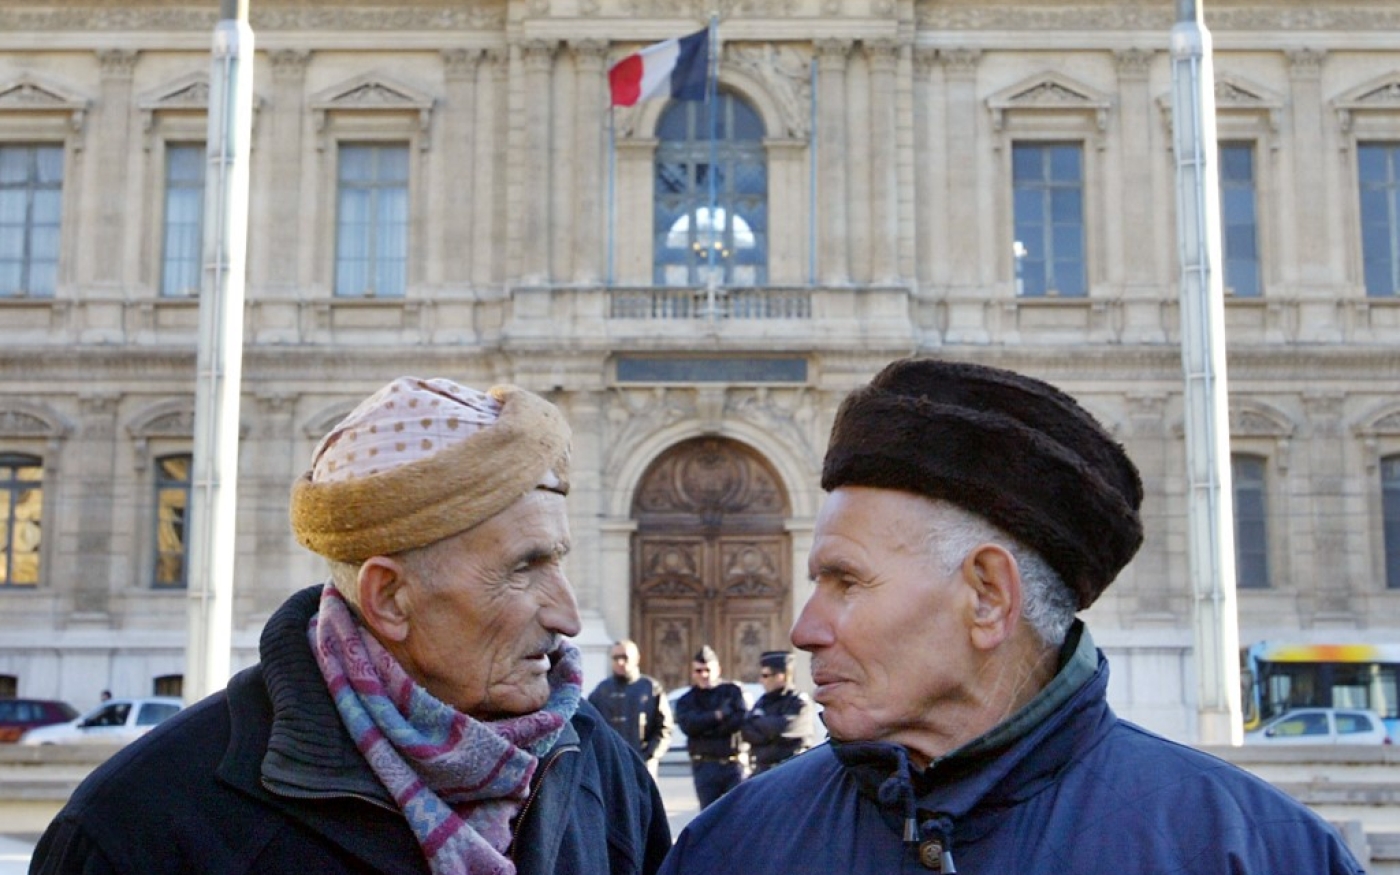 Des retraités maghrébins participent à une manifestation devant la préfecture de Marseille, le 15 décembre 2005, pour demander la restauration de leurs aides sociales (AFP/Anne-Christine Poujoulat)